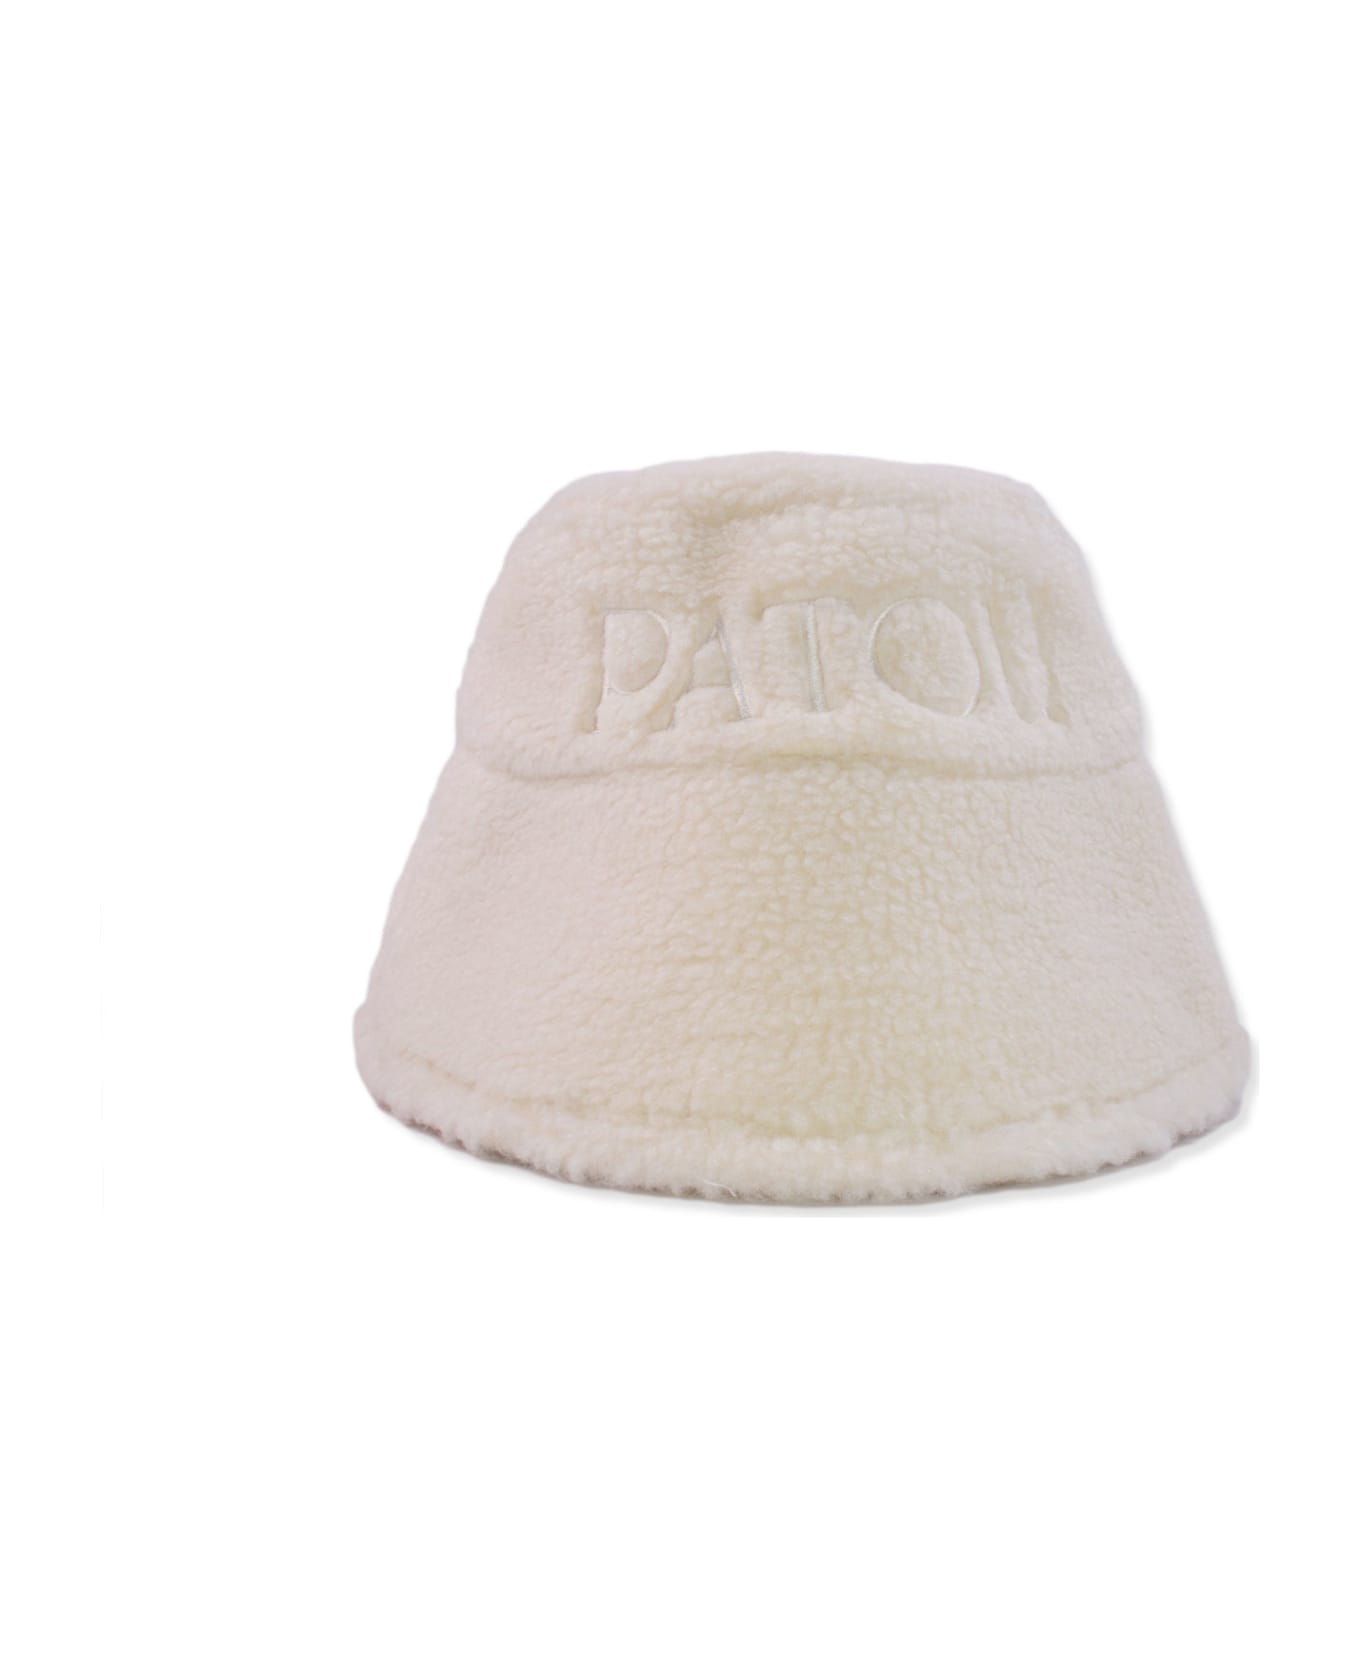 Patou Ivory Cotton Blend Hat - White